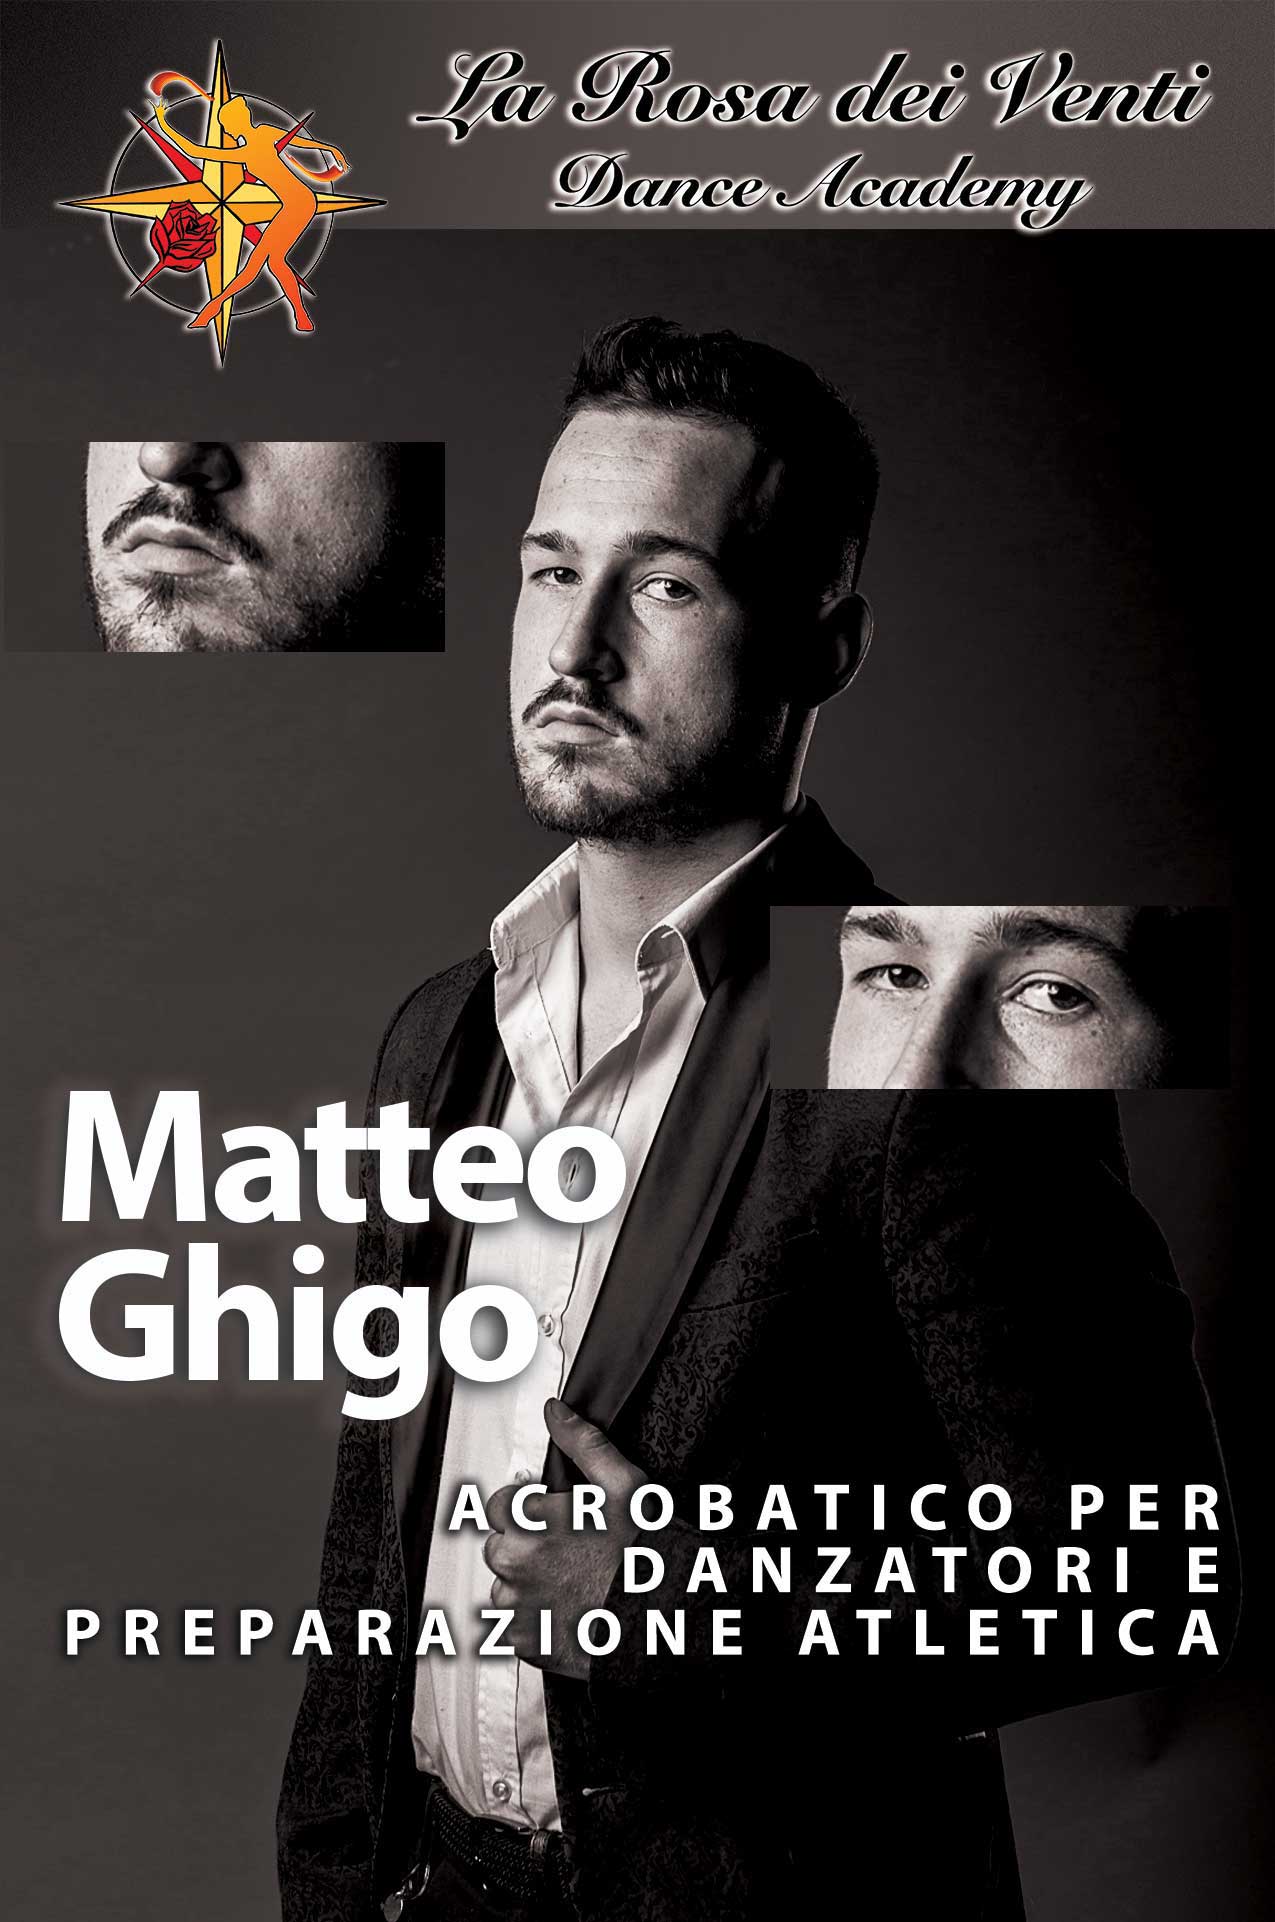 Matteo Ghigo Acrobatico per danzatori e preparazione atletica La Rosa dei Venti Dance Accademy